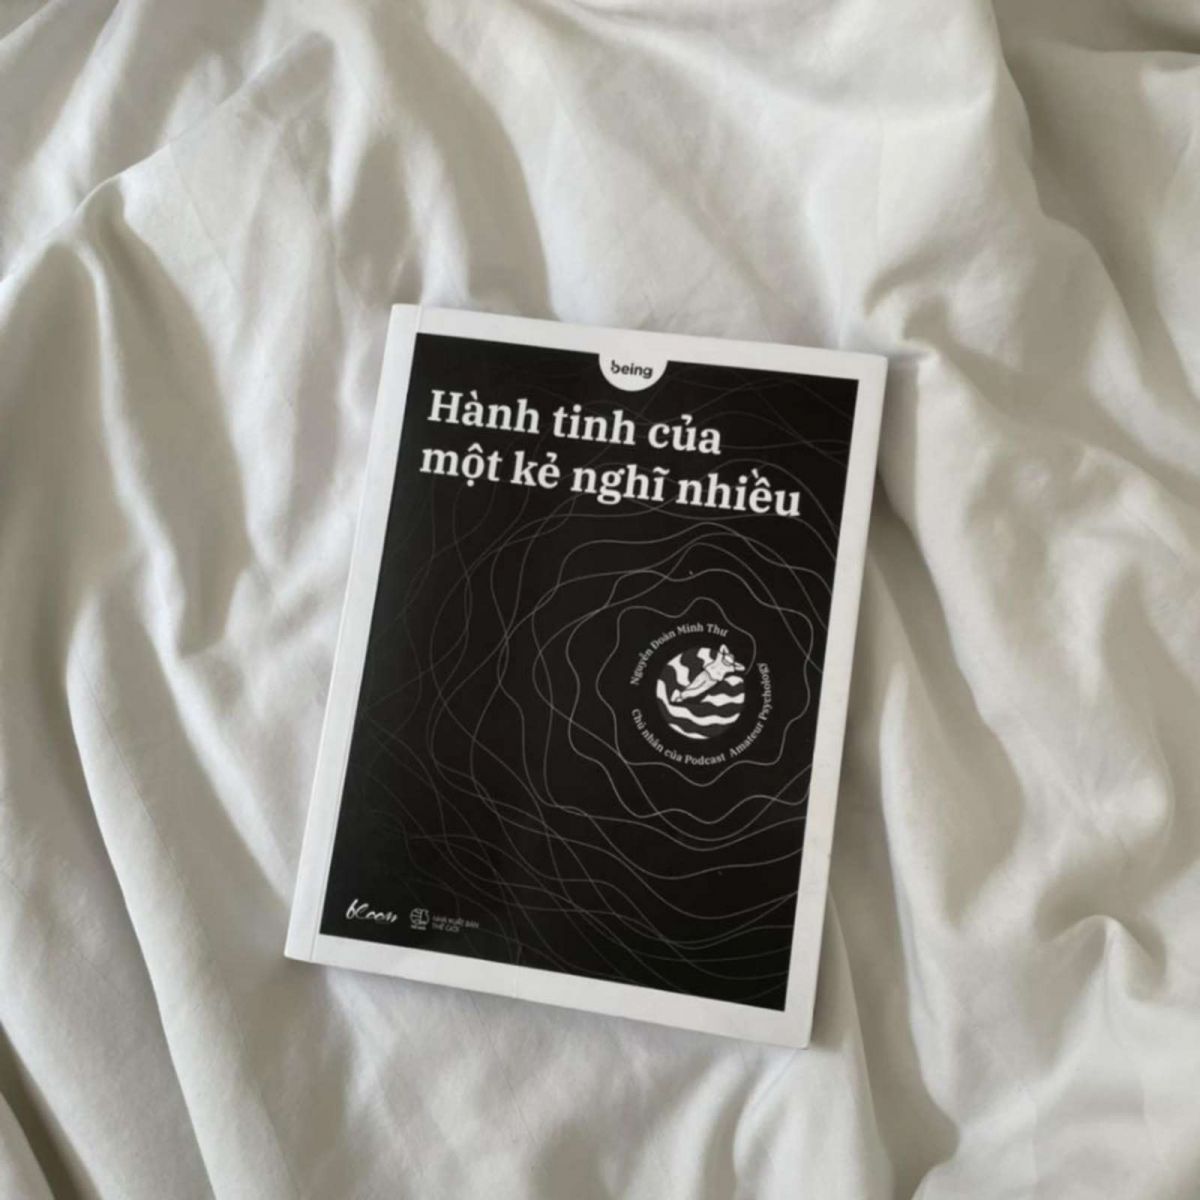 Hành tinh của một kẻ nghĩ nhiều, Nguyễn Đoàn Minh Thư, review sách, sách tâm lý